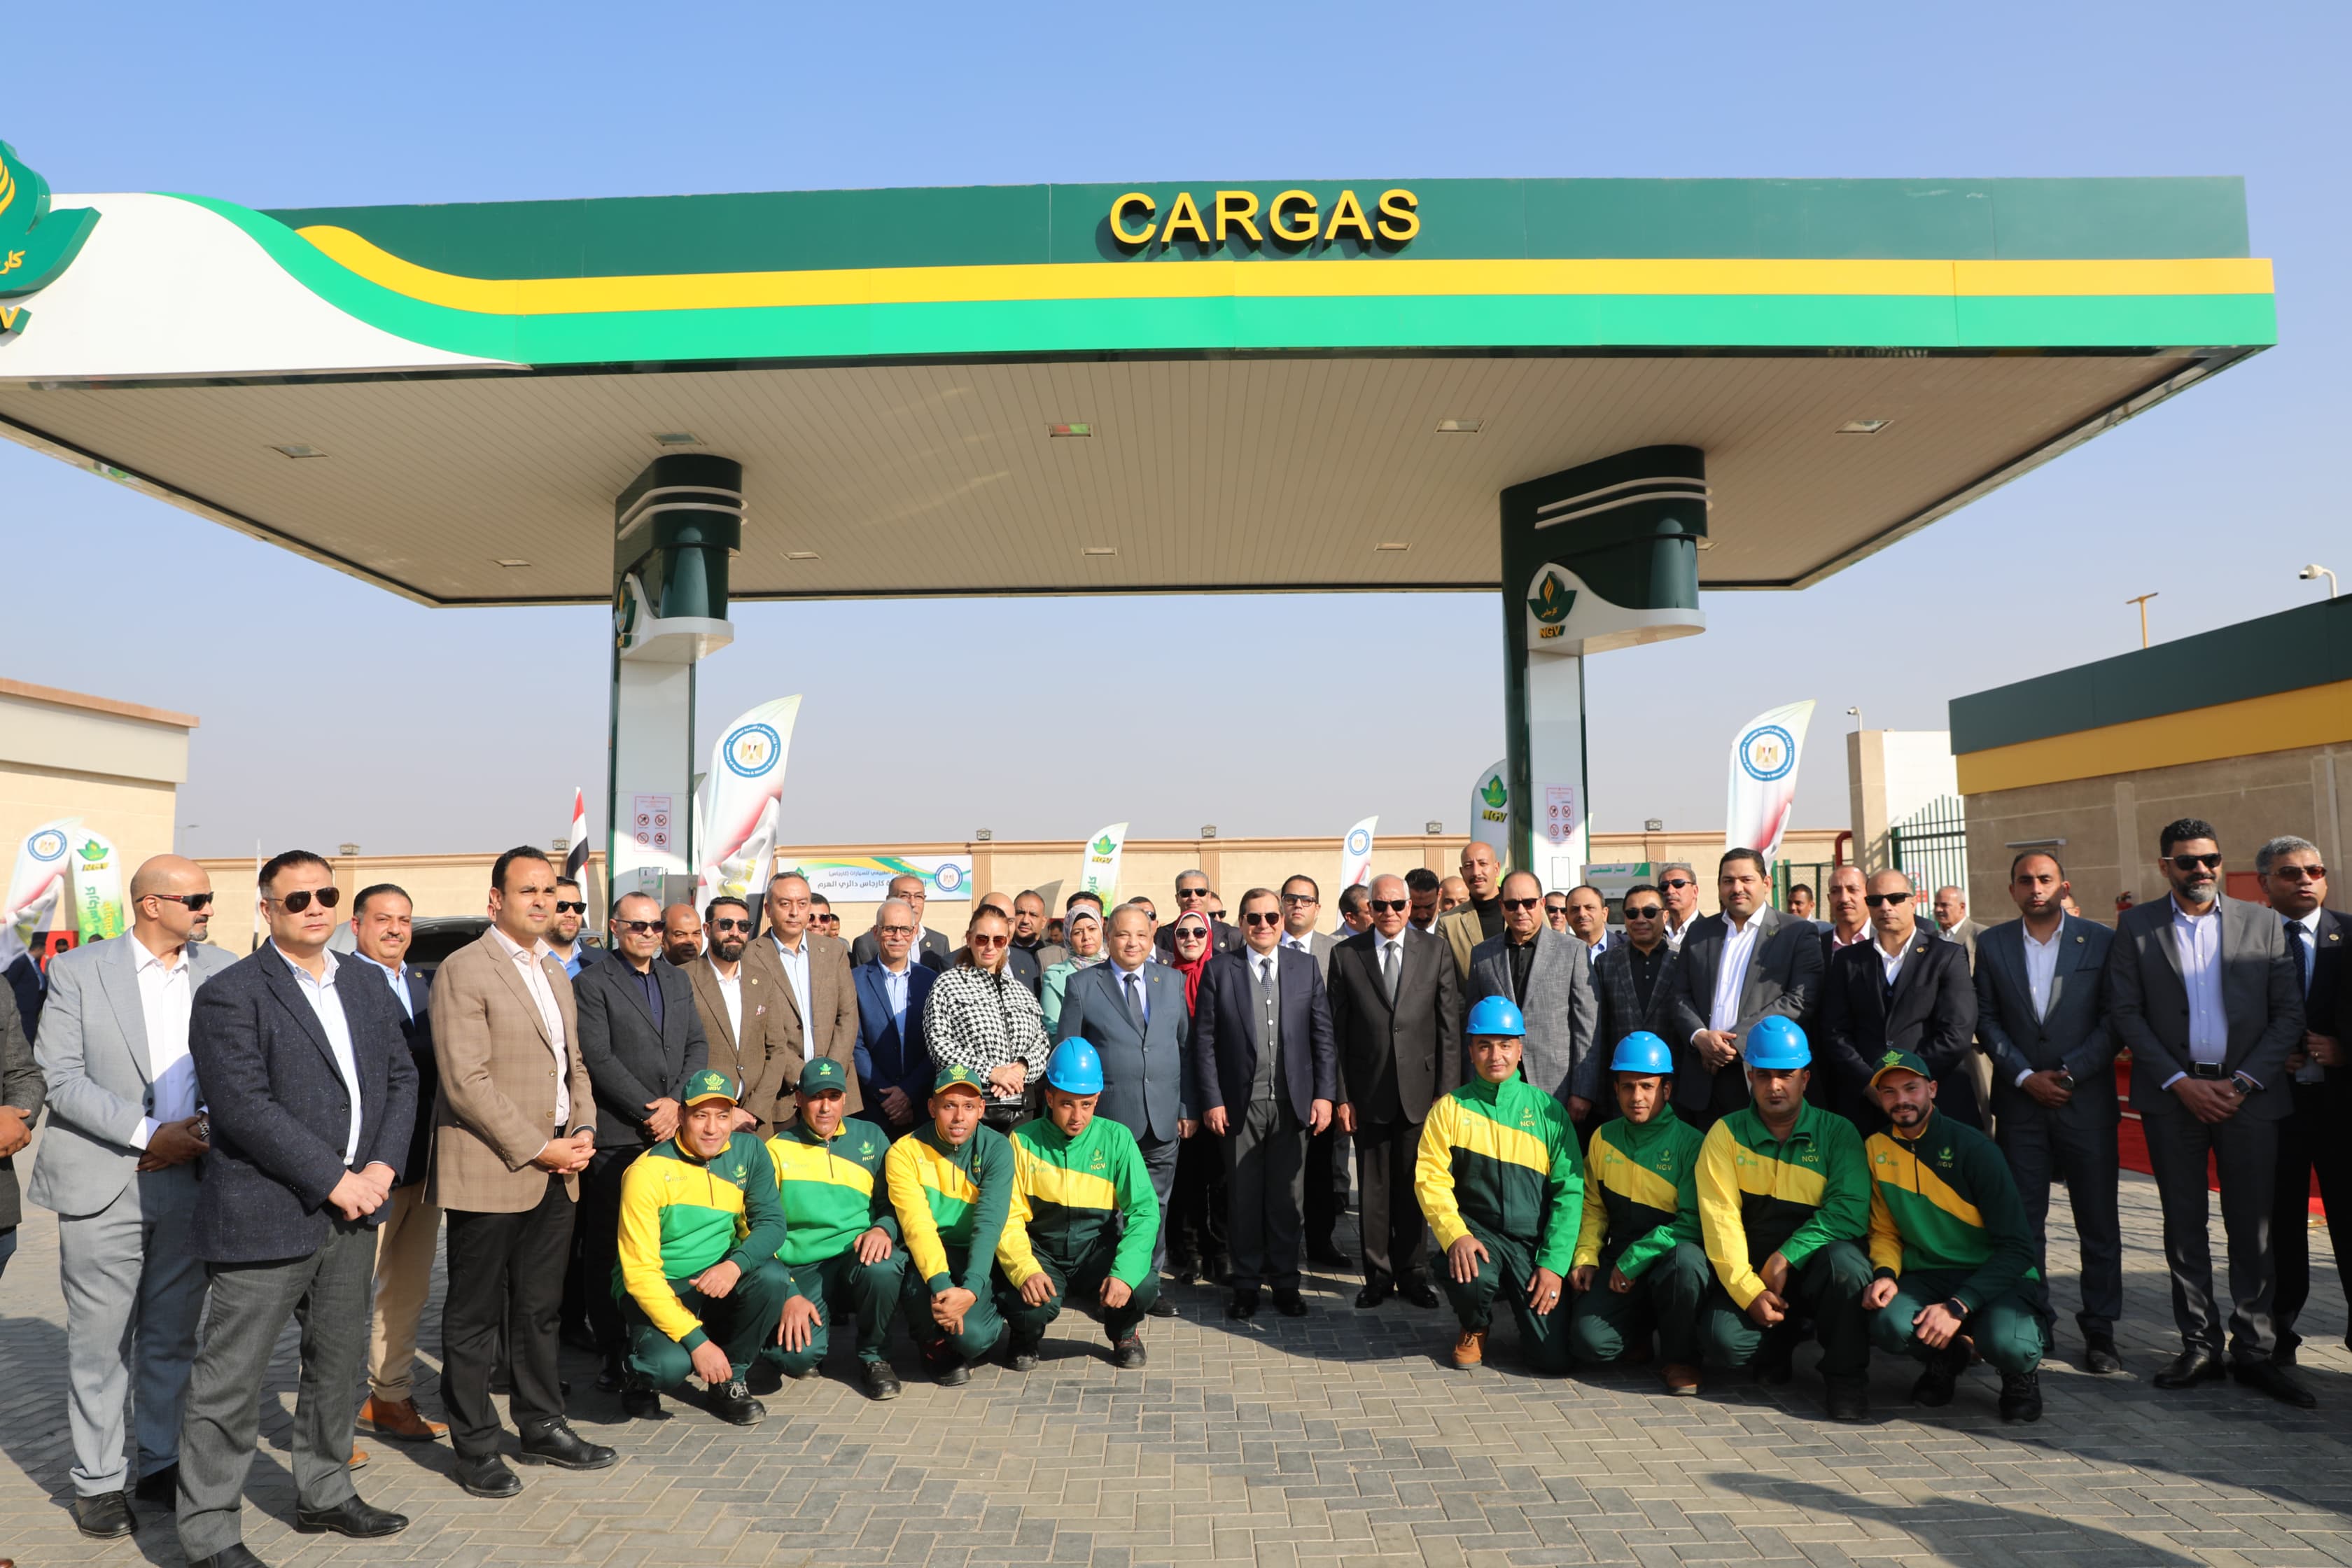 افتتاح محطة كارجاس للغاز الطبيعي بمنطقة دائري الهرم